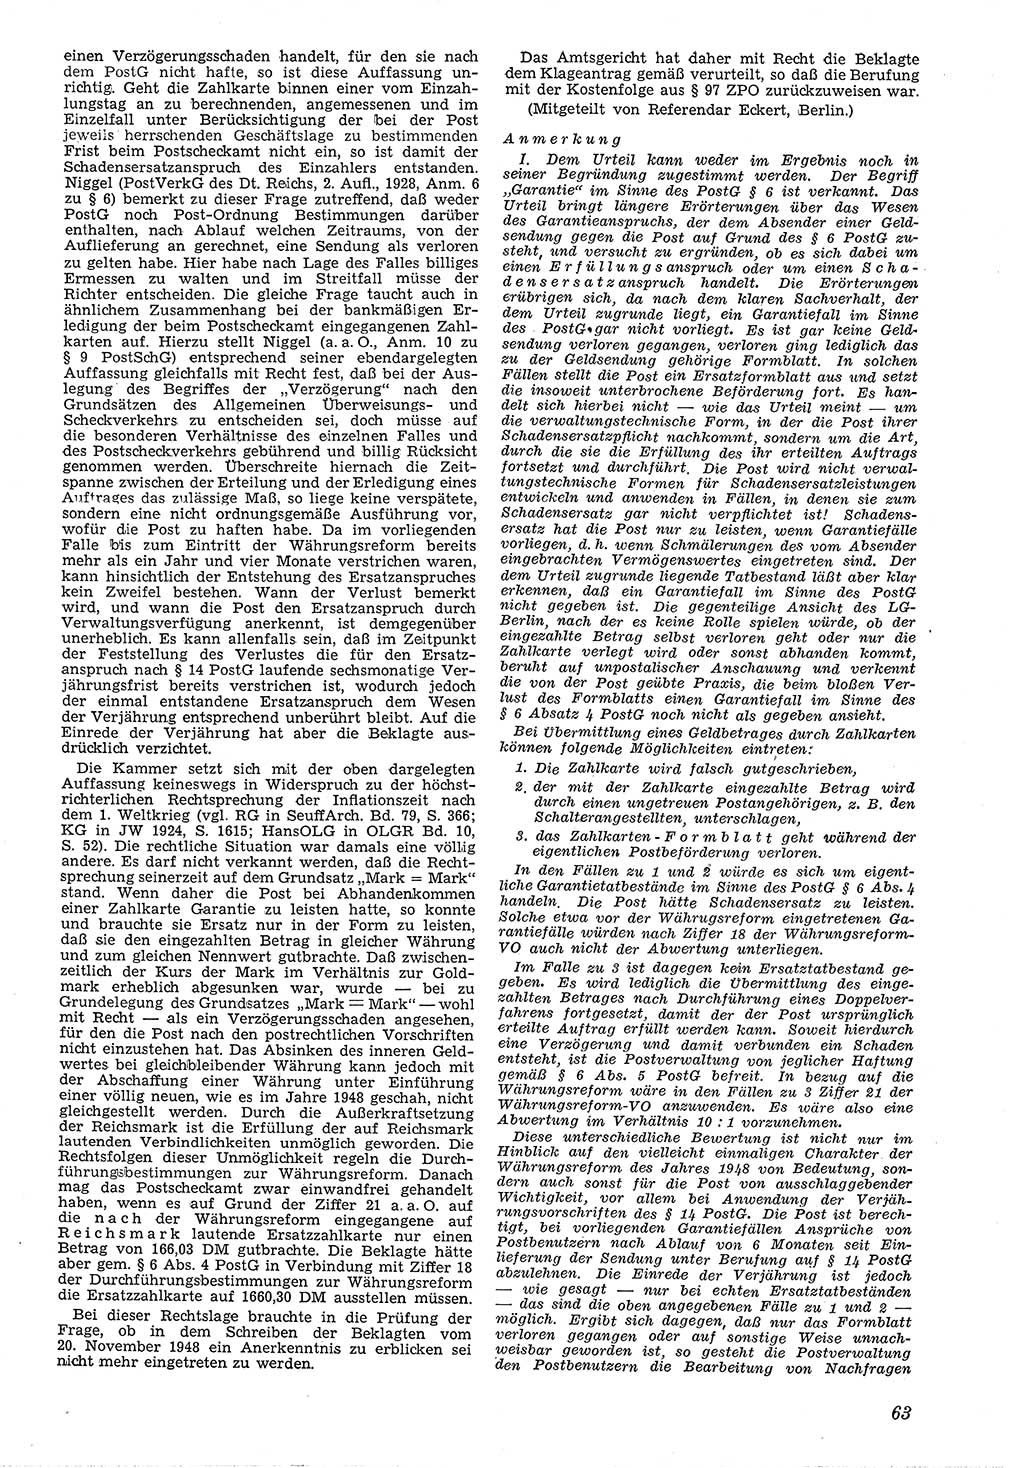 Neue Justiz (NJ), Zeitschrift für Recht und Rechtswissenschaft [Deutsche Demokratische Republik (DDR)], 4. Jahrgang 1950, Seite 63 (NJ DDR 1950, S. 63)